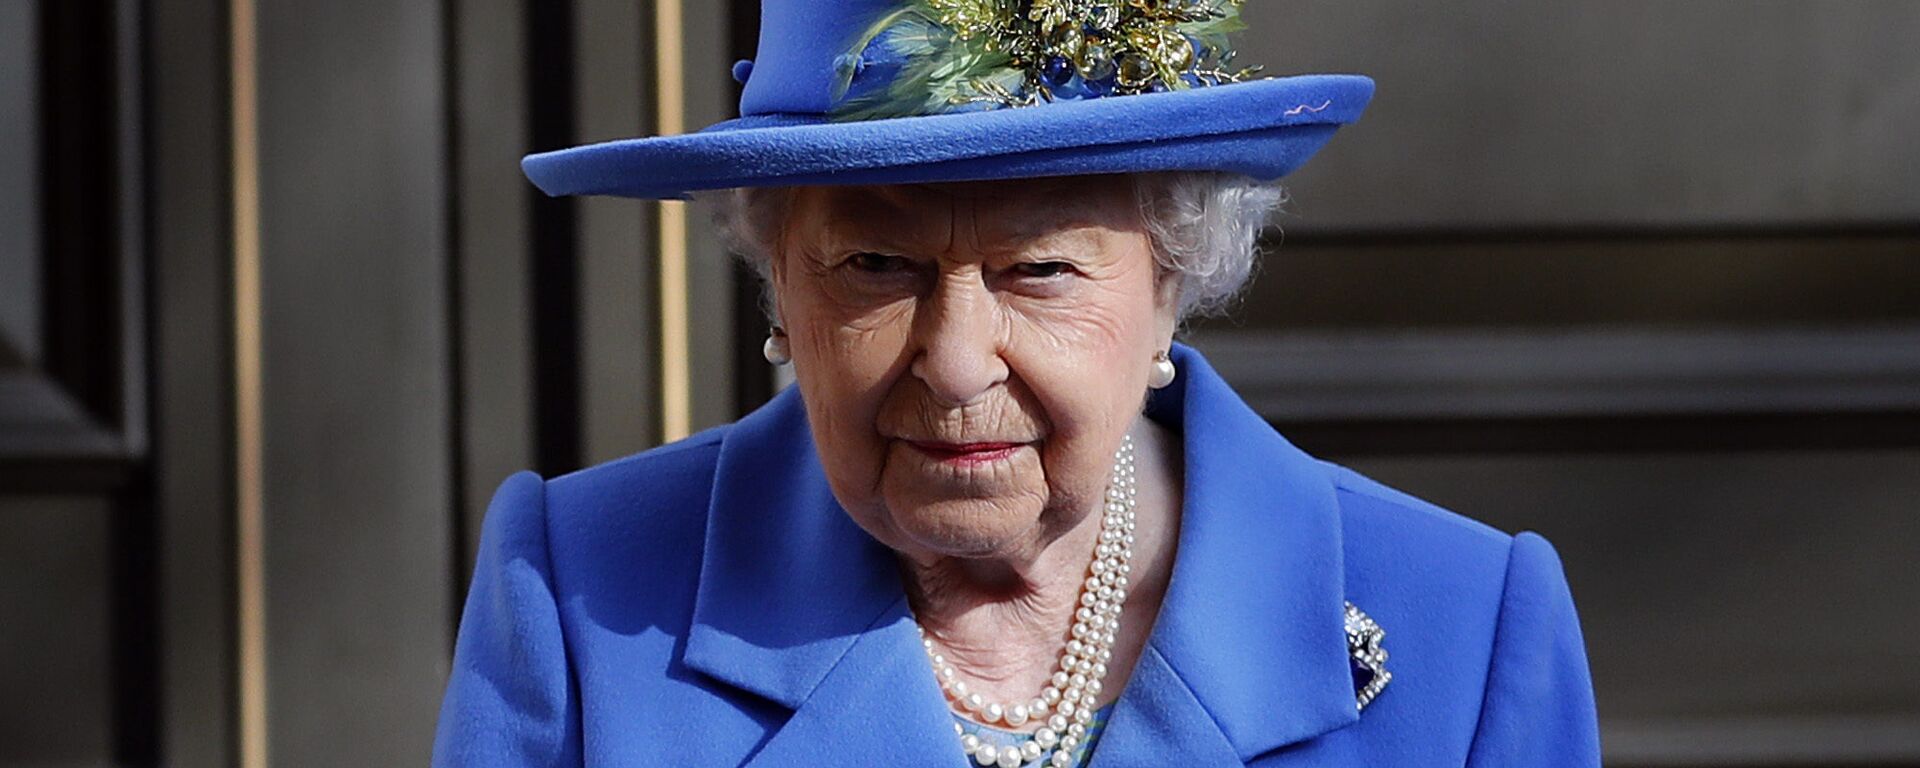 La reina británica, Isabel II - Sputnik Mundo, 1920, 05.11.2019